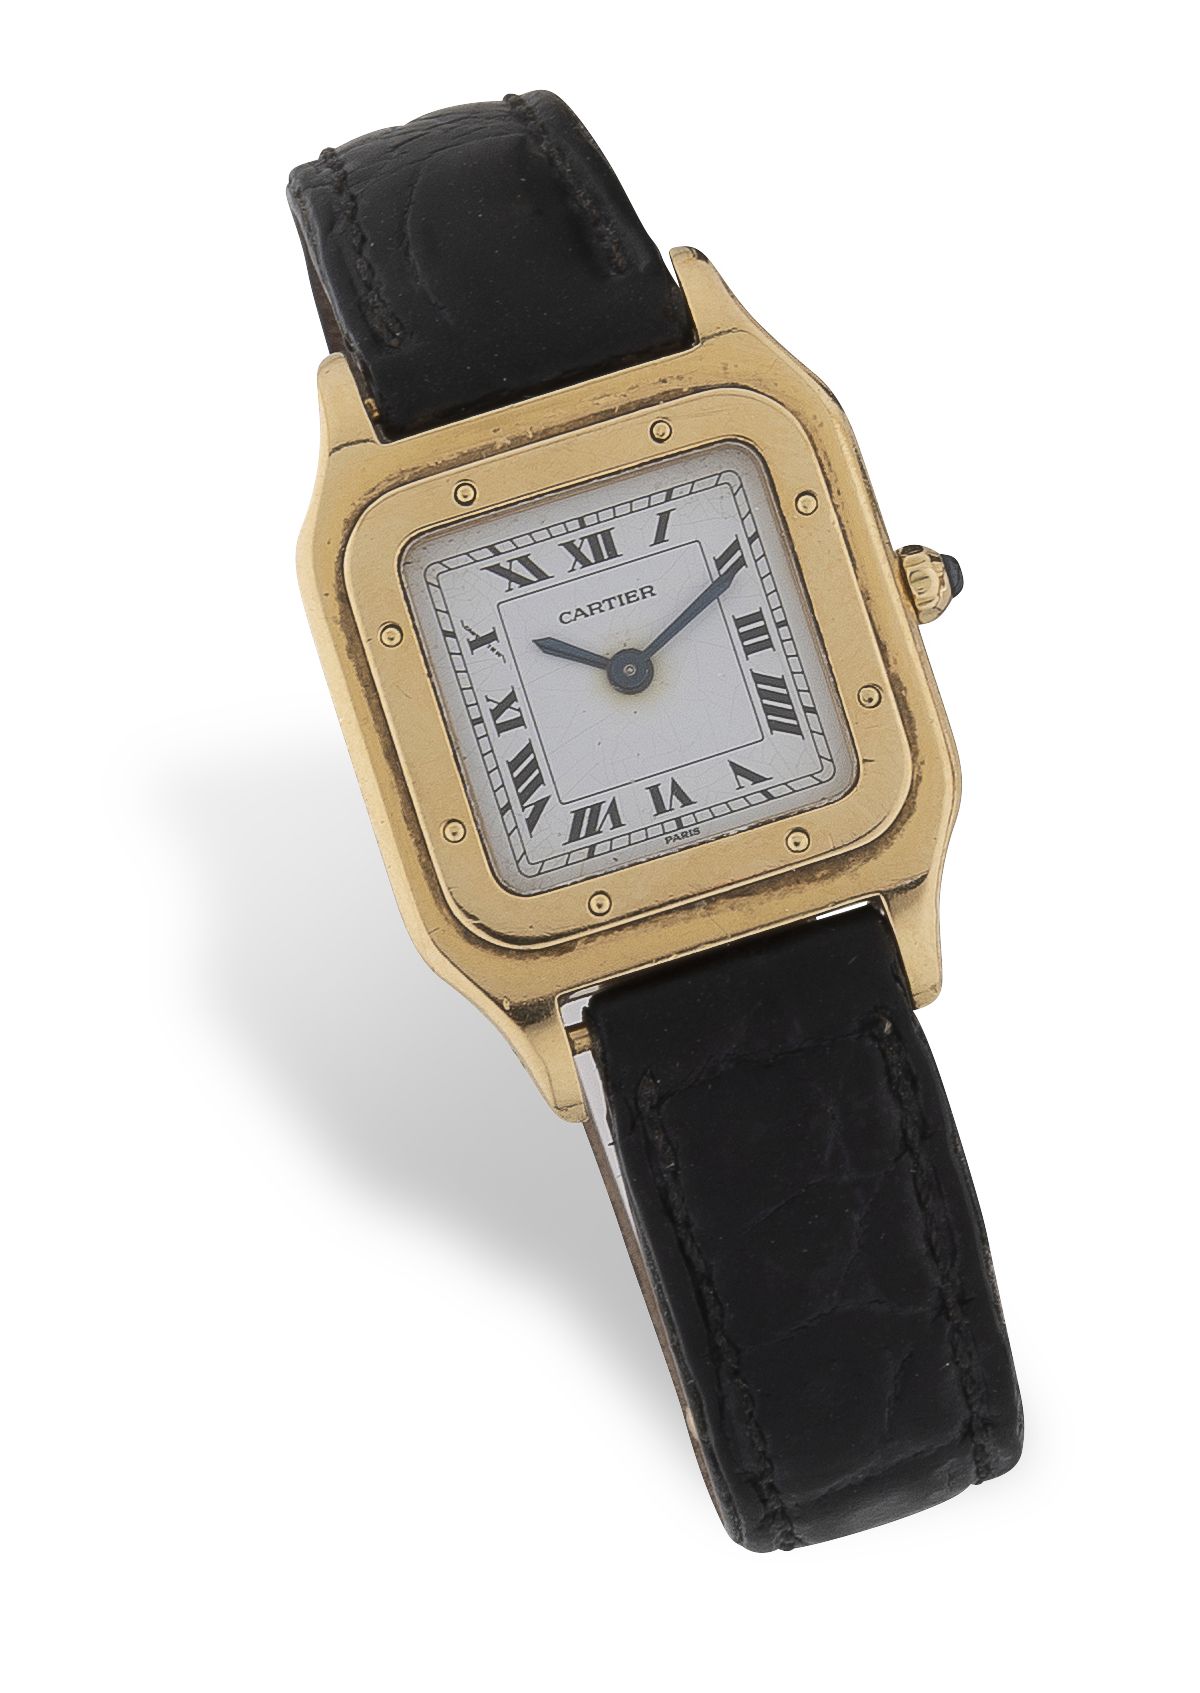 CARTIER "Santos" Reloj de pulsera de señora en oro amarillo (750).

Esfera esmal&hellip;